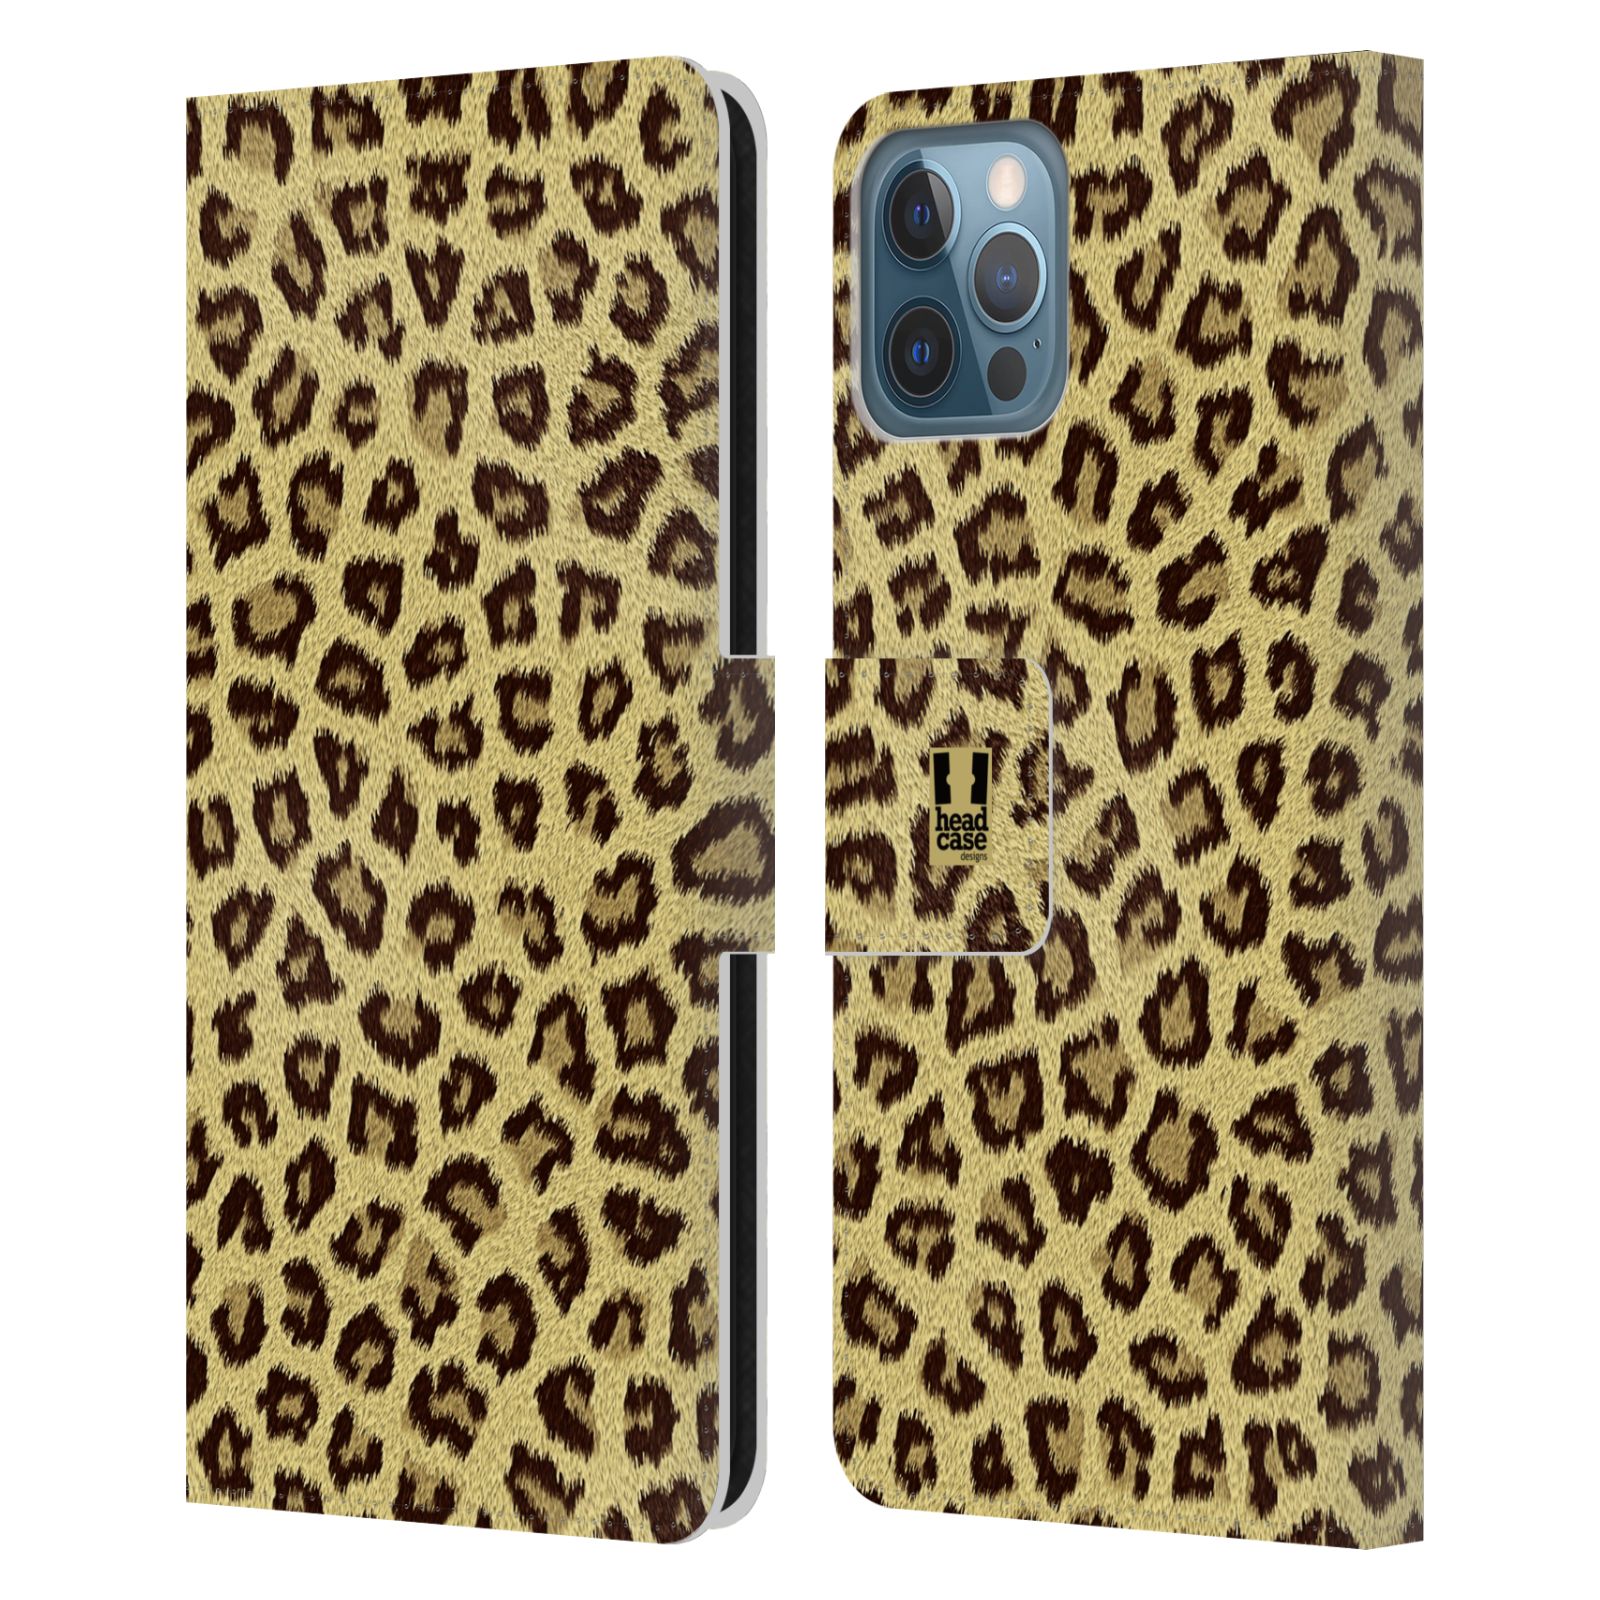 Pouzdro pro mobil Apple Iphone 12 / 12 Pro - Obrázek zvířecí srst jaguár, gepard